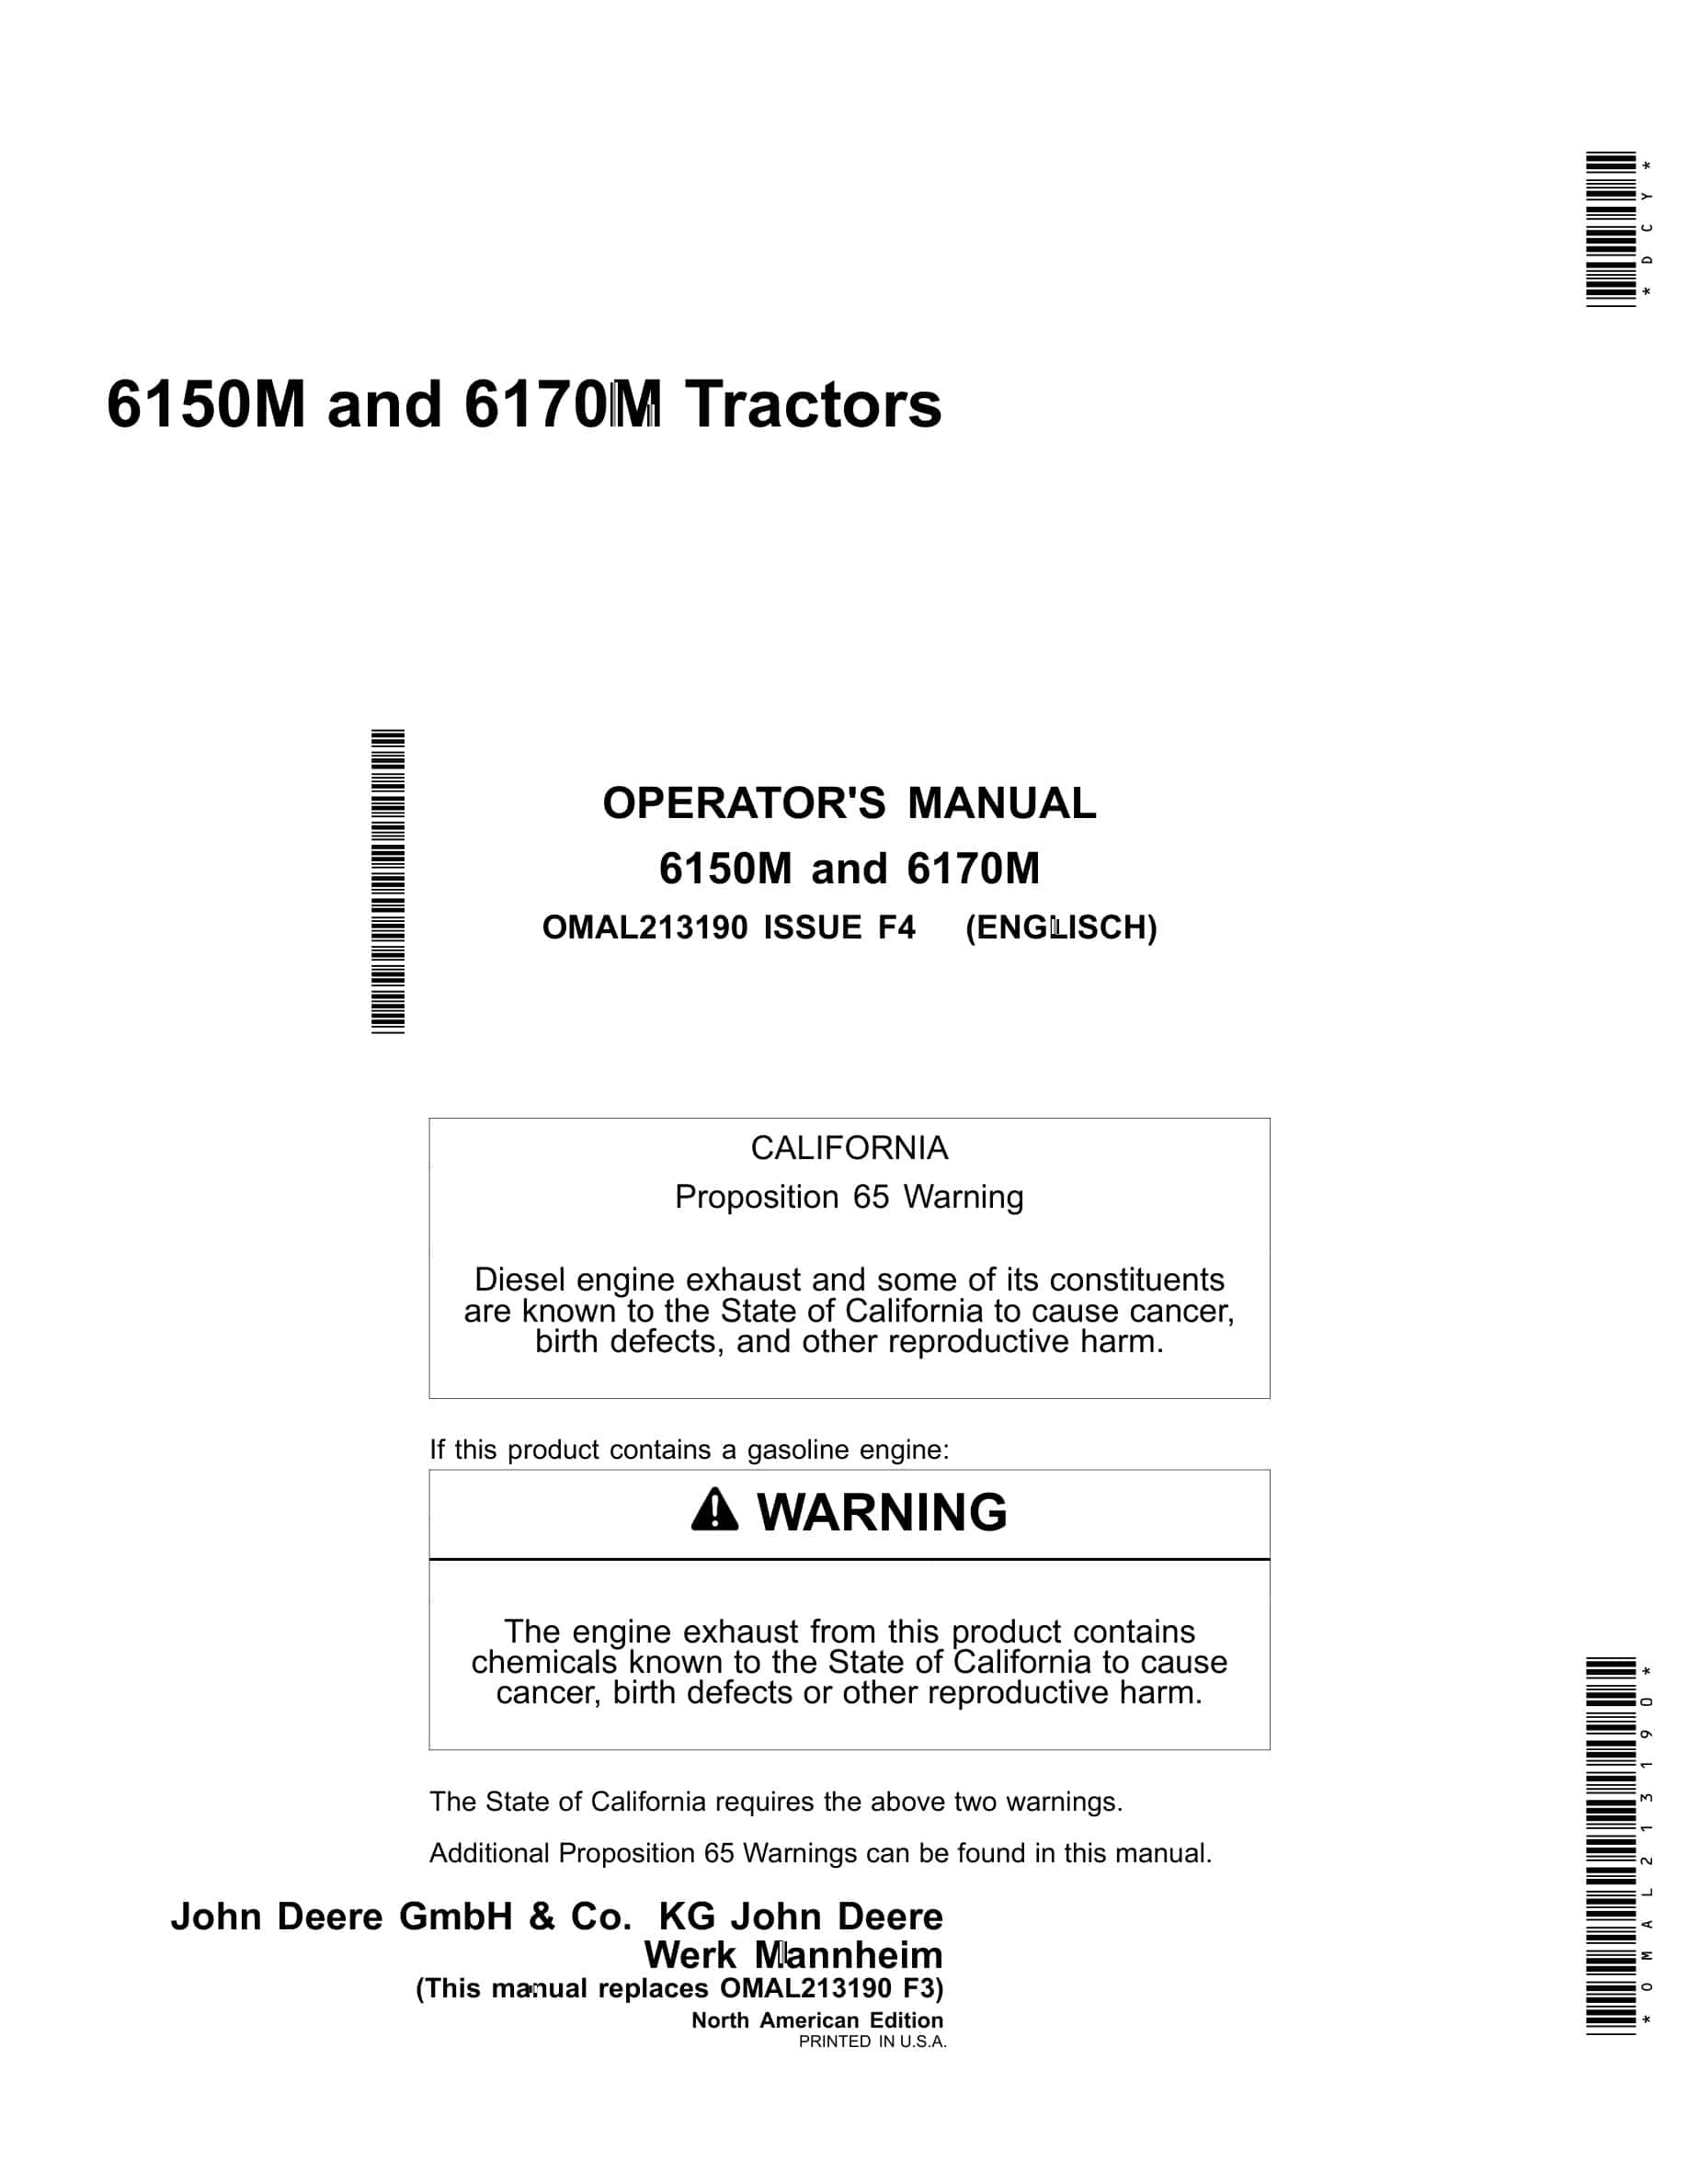 John Deere 6150M and 6170M Tractor Operator Manual OMAL213190-1